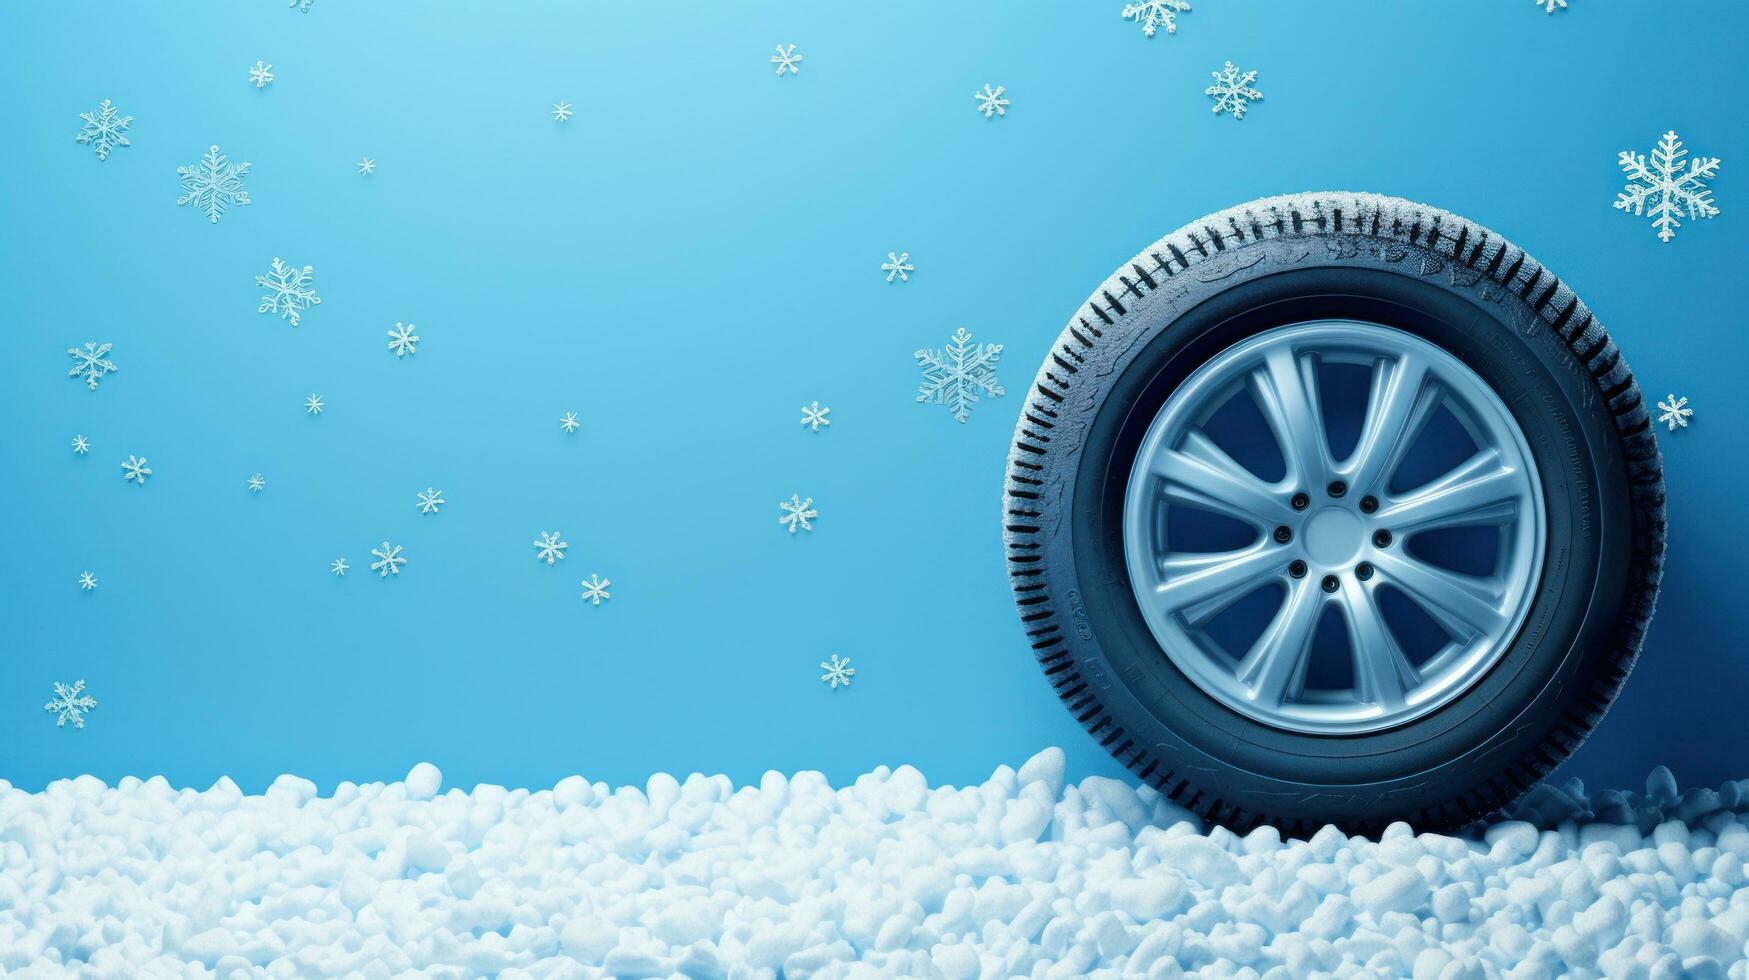 carro pneu com realista flocos de neve em azul fundo foto